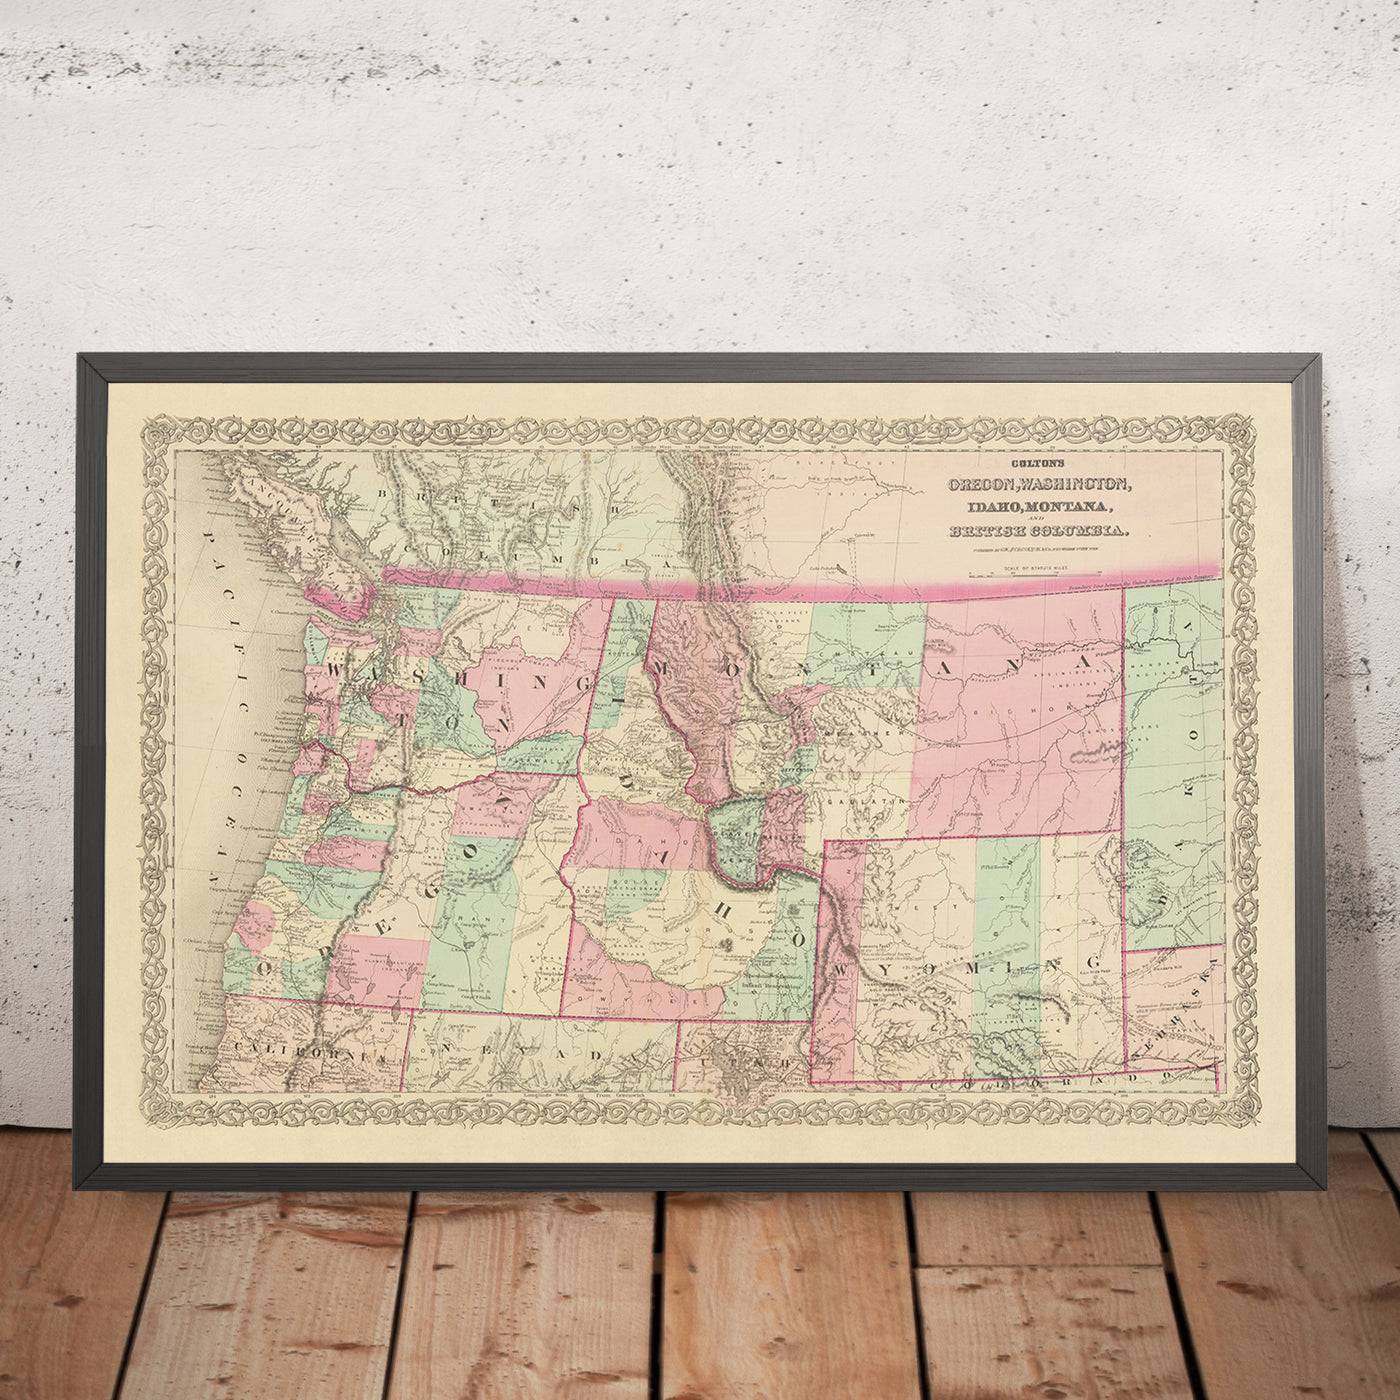 Ancienne carte du nord-ouest du Pacifique par JH Colton, 1868 : Portland, Seattle, Boise, Helena, Cheyenne